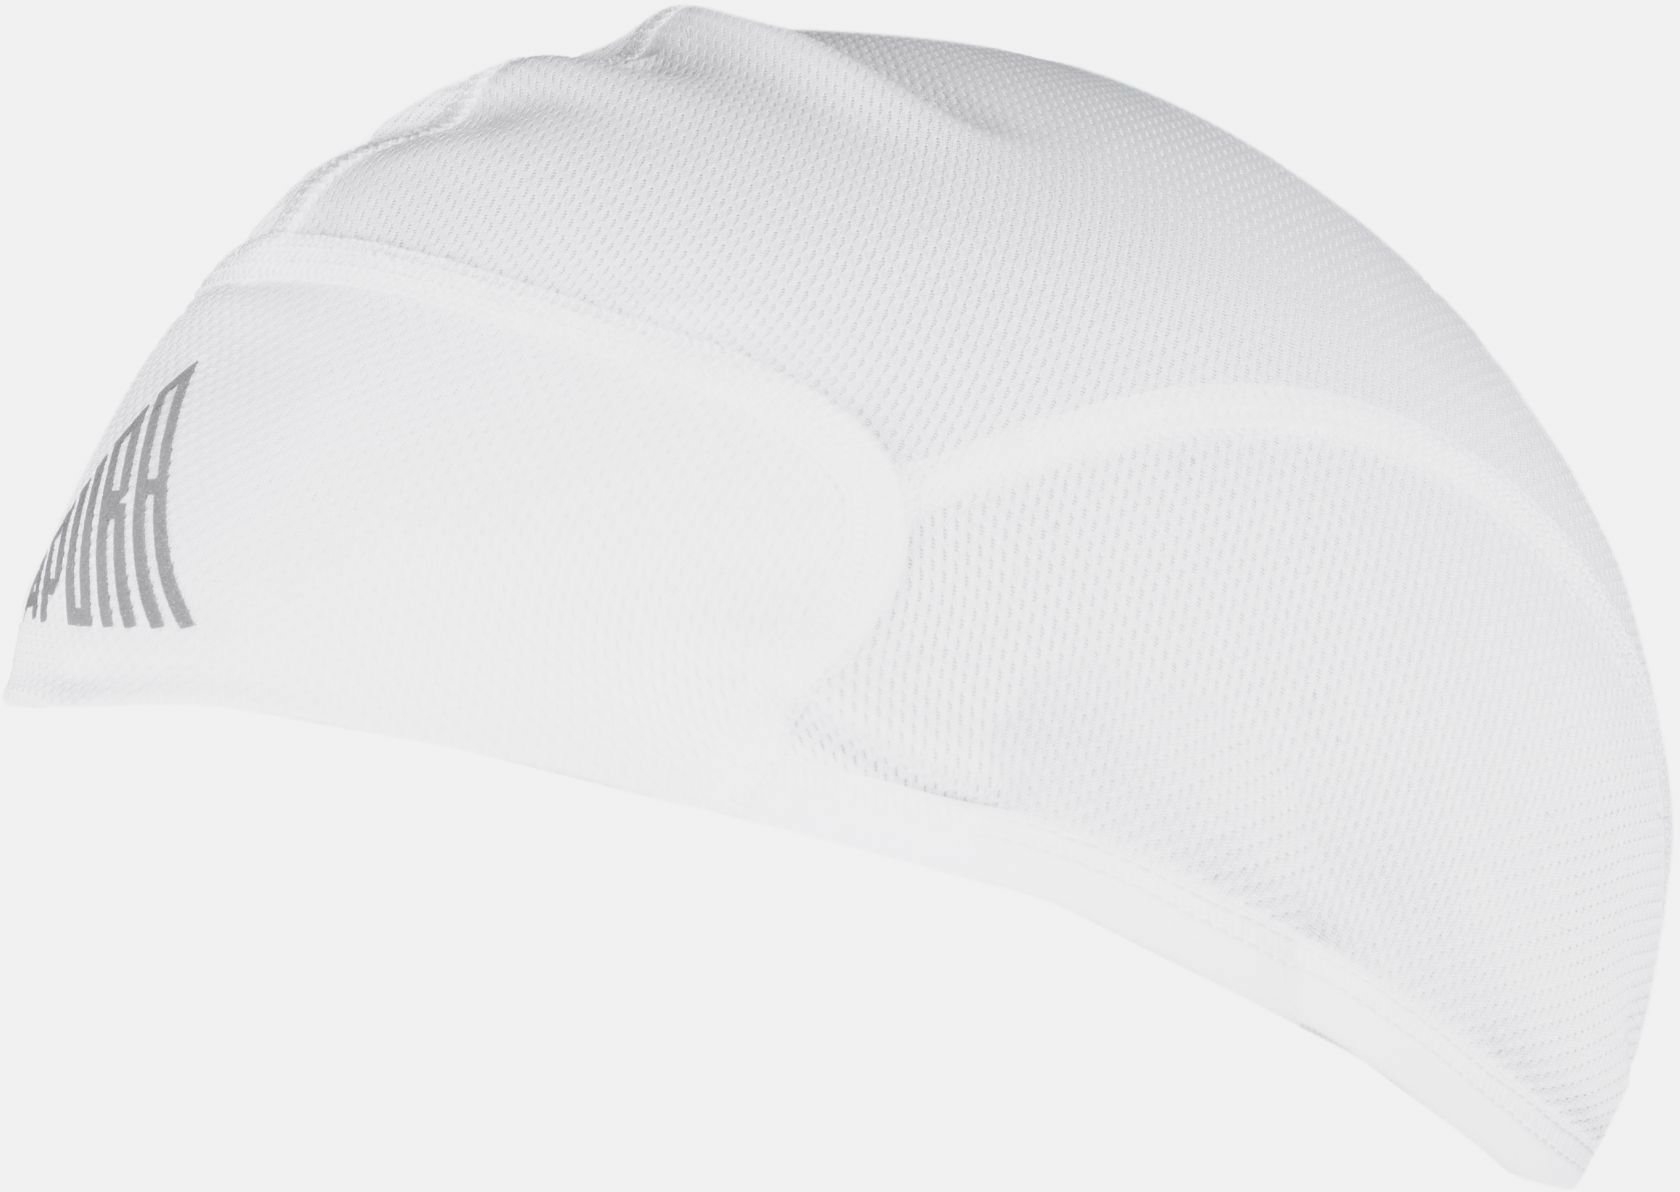 Apura Helmmütze UV Shield L/XL white